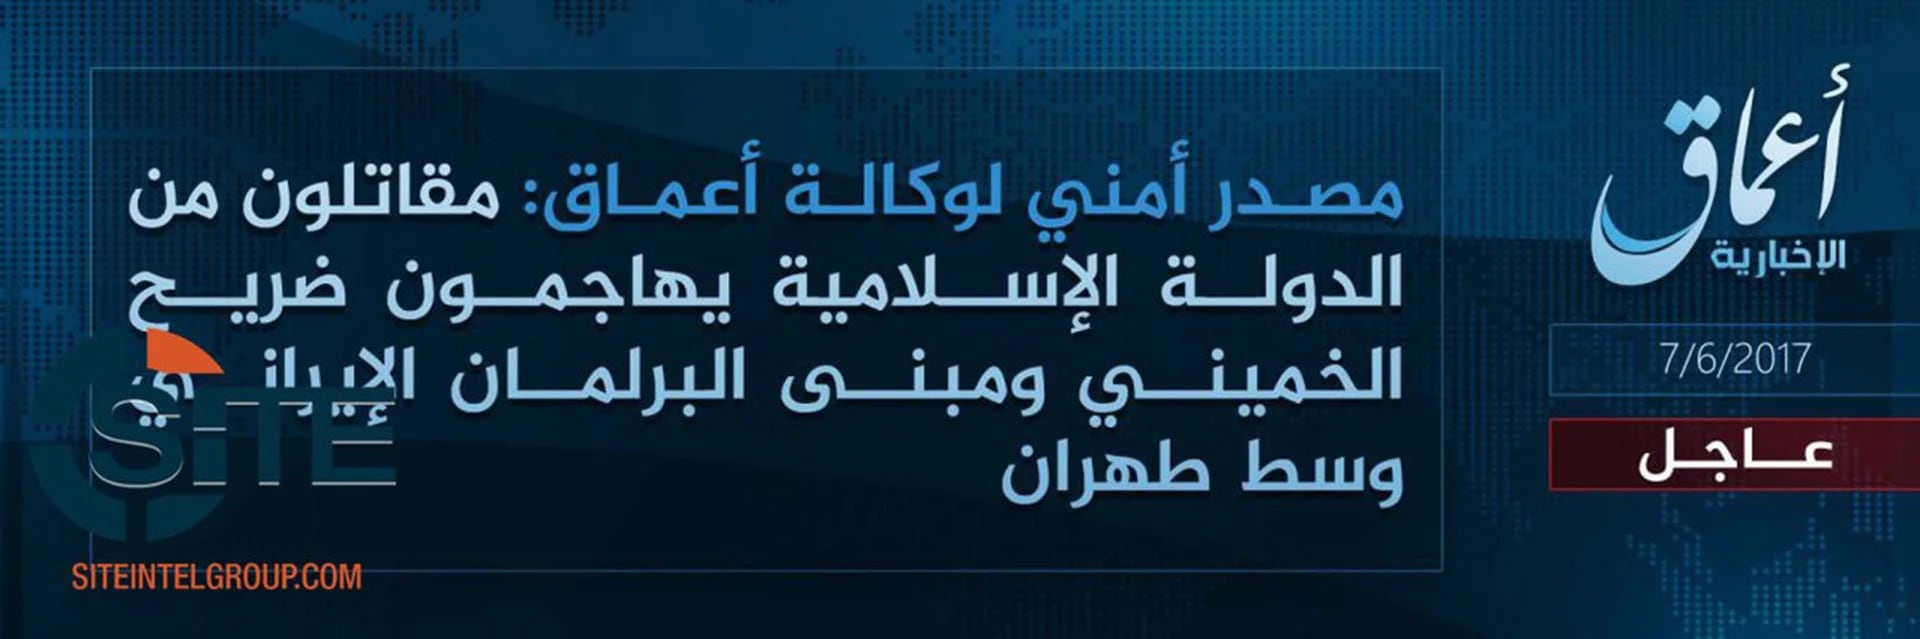 El comunicado en el que el ISIS se atribuye el atentado, divulgado por Amaq